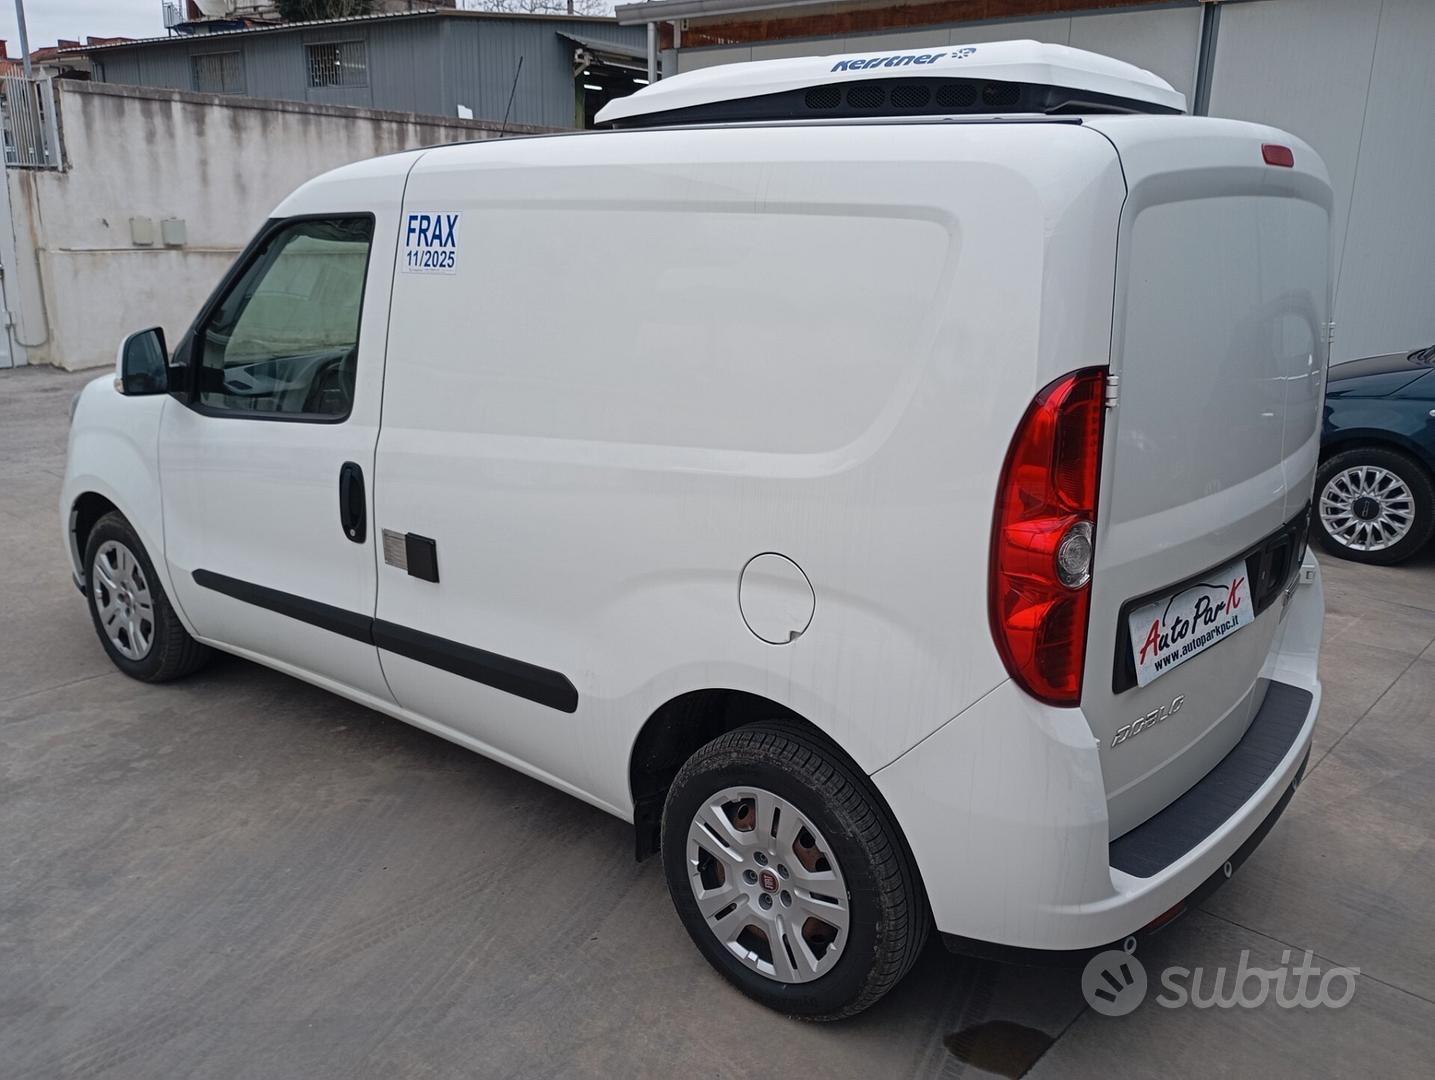 Subito - AUTOPARK - Fiat Doblo Cargo 1.6 Mjet 105CV SX 3 Posti Frigo - Auto  In vendita a Napoli